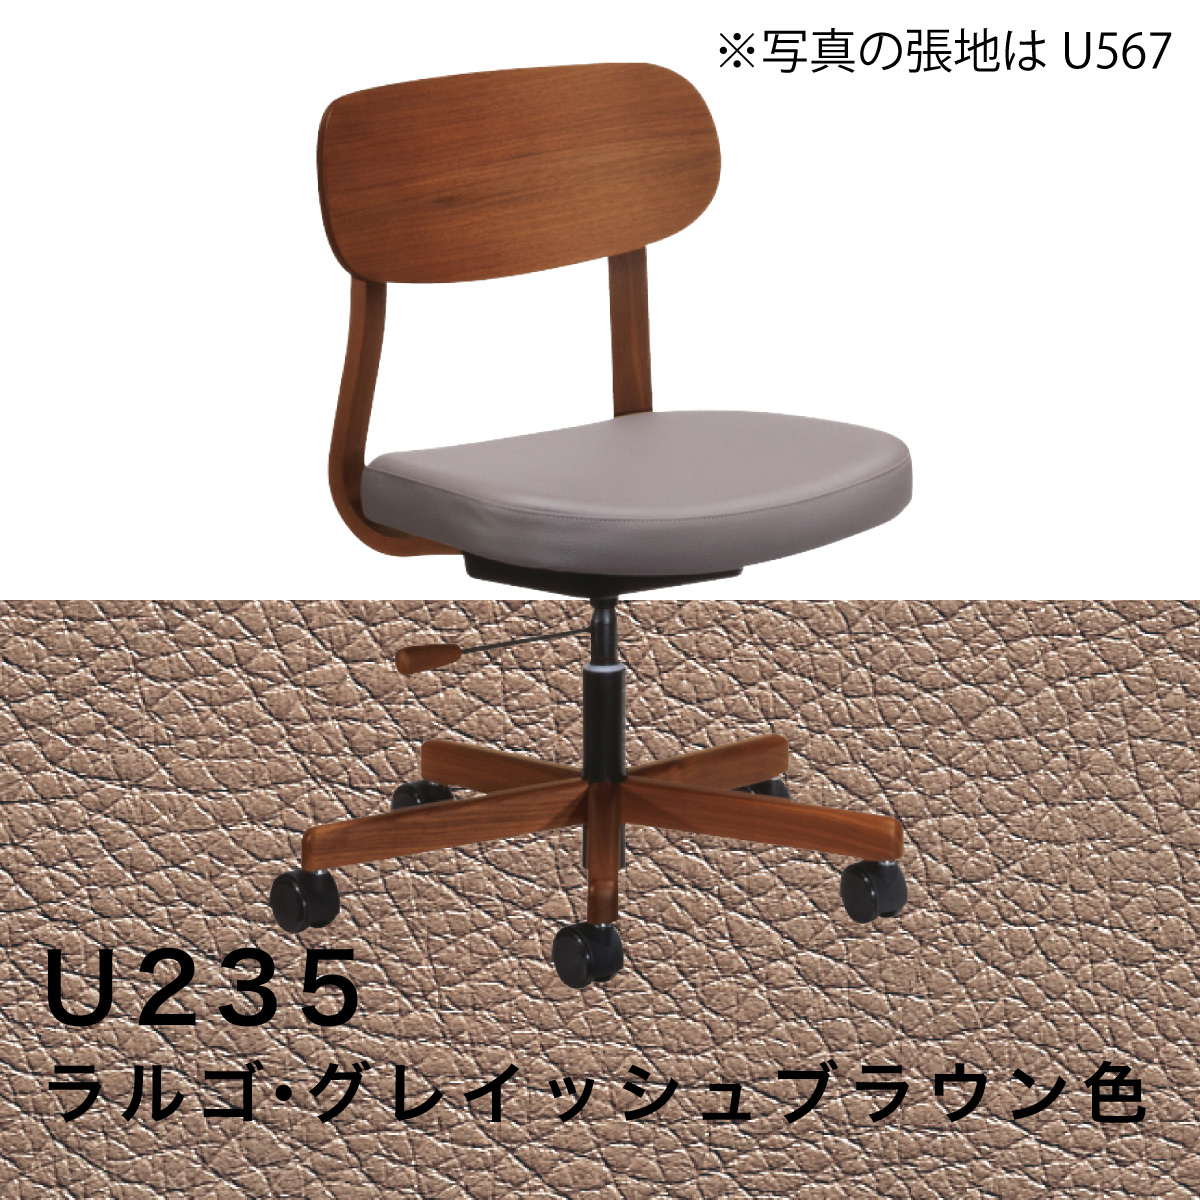 カリモク デスクチェア XW3301 オフィスチェア 木製 ウォールナット材 合成皮革張り ワークチェア 高さ調整 疲れない 姿勢 回転椅子  キャスター 国産 karimoku